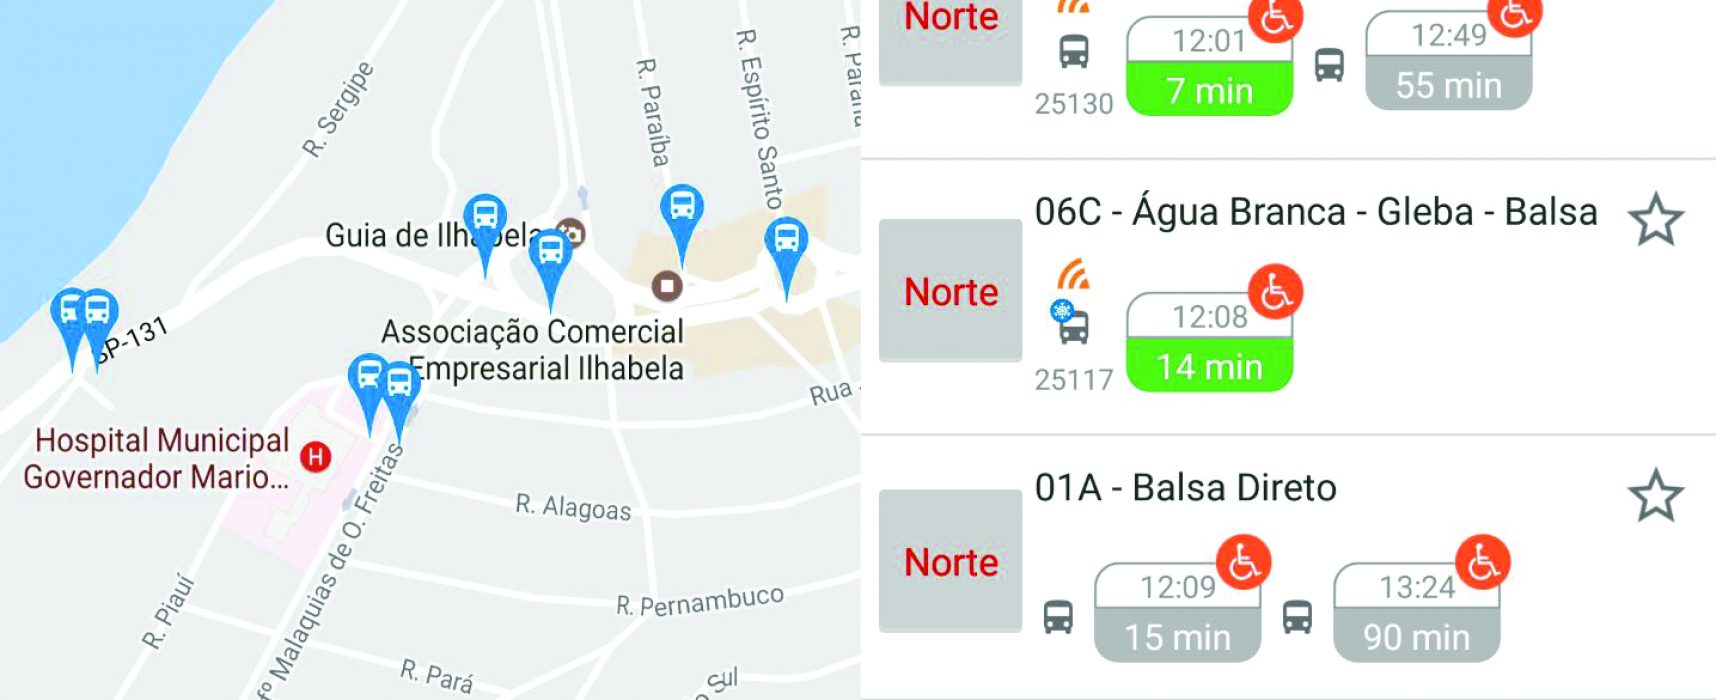 Prefeitura de Ilhabela lança hoje aplicativo que monitora ônibus, veículos oficiais e caminhões de lixo